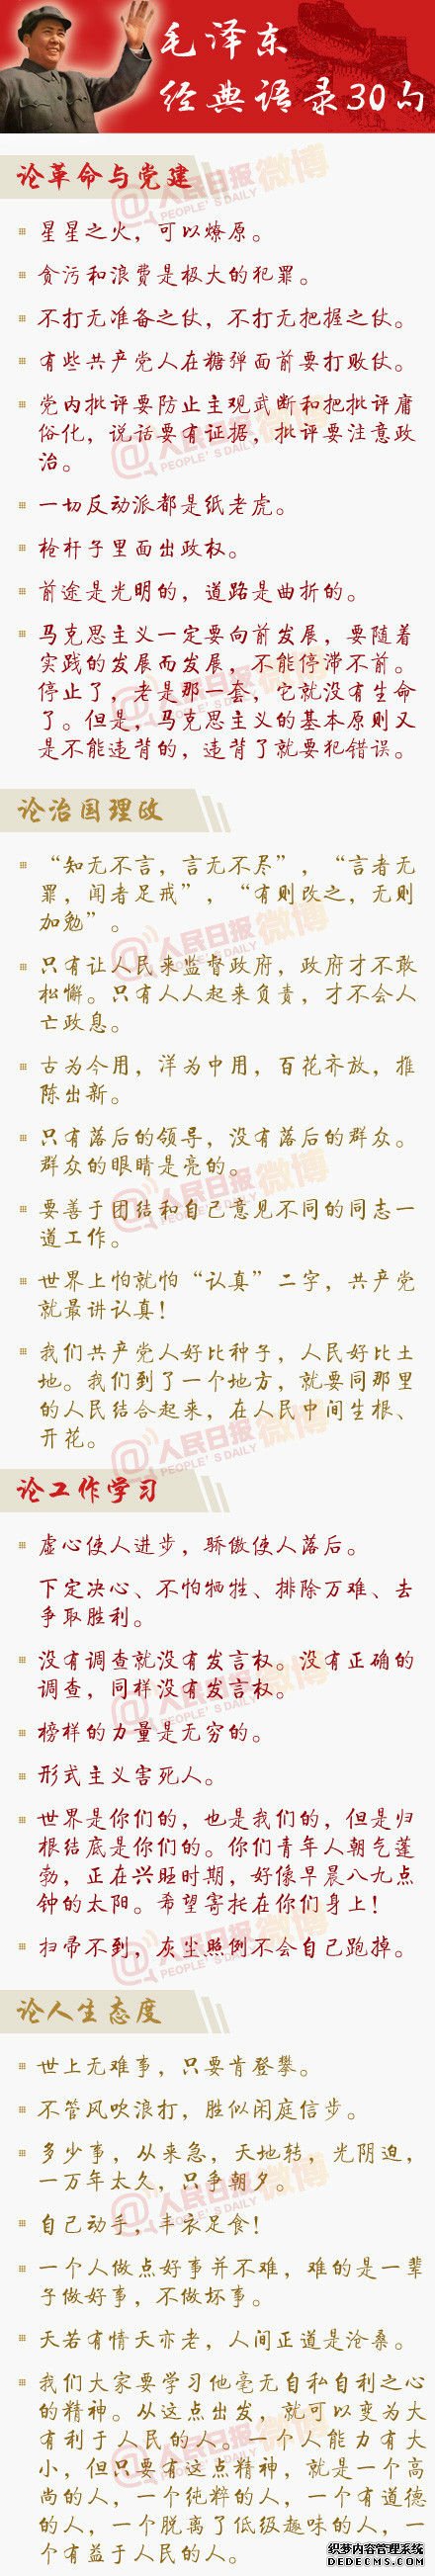 人民日报官微发30句毛泽东经典语录